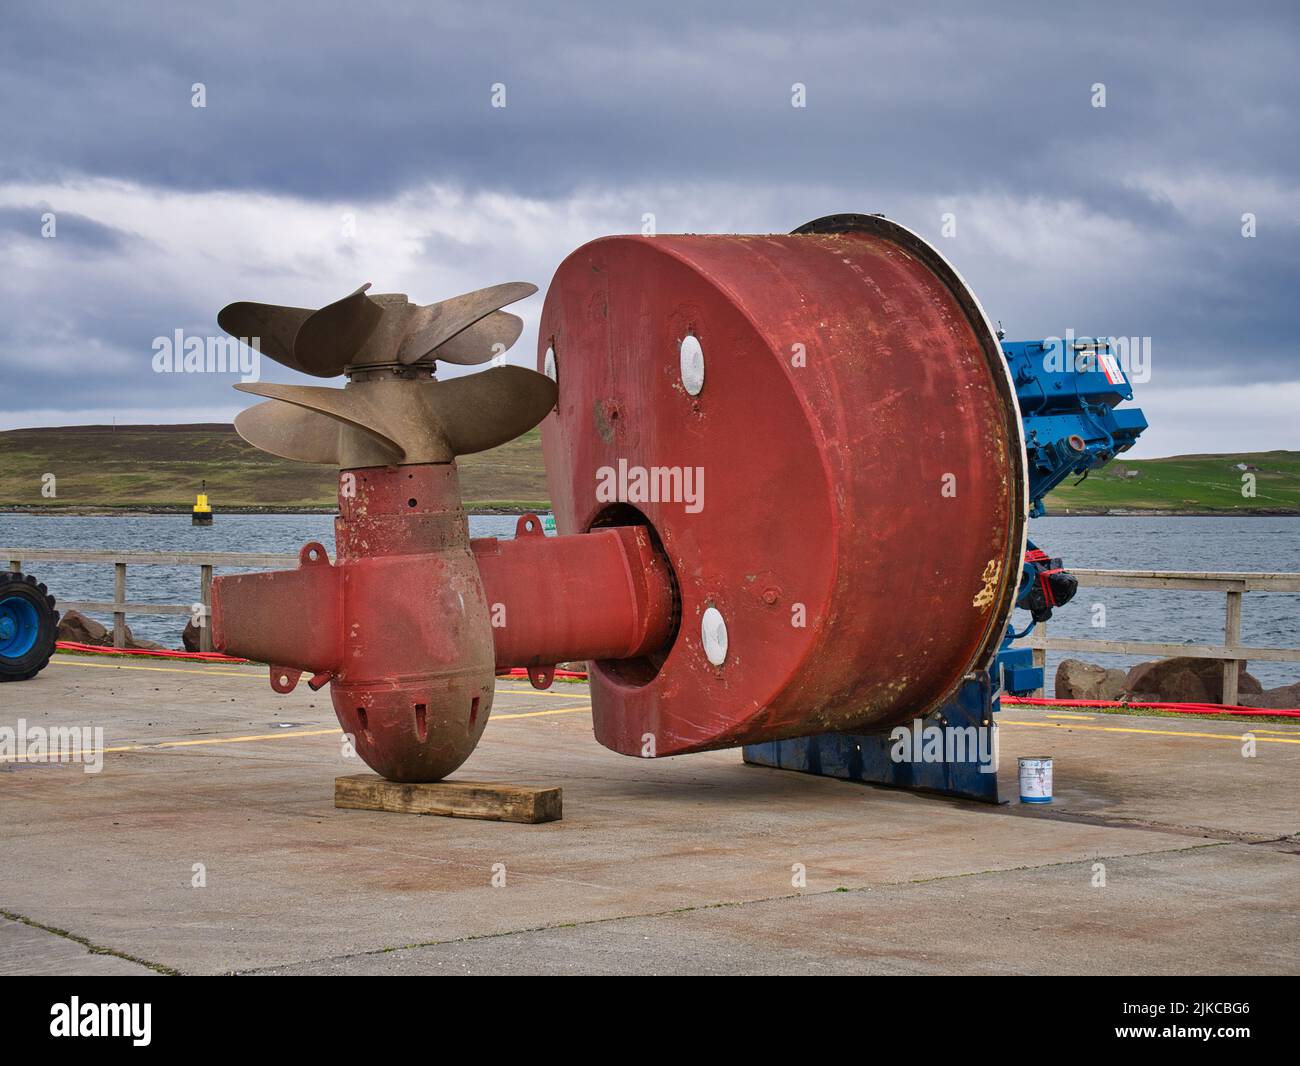 Ein großes, rotes, doppeltes Azimut-Thruster mit Doppelschraube am Kai im Hafen von Lerwick in Shetland, Großbritannien. Aufgenommen an einem bewölkten, bewölkten Tag. Stockfoto